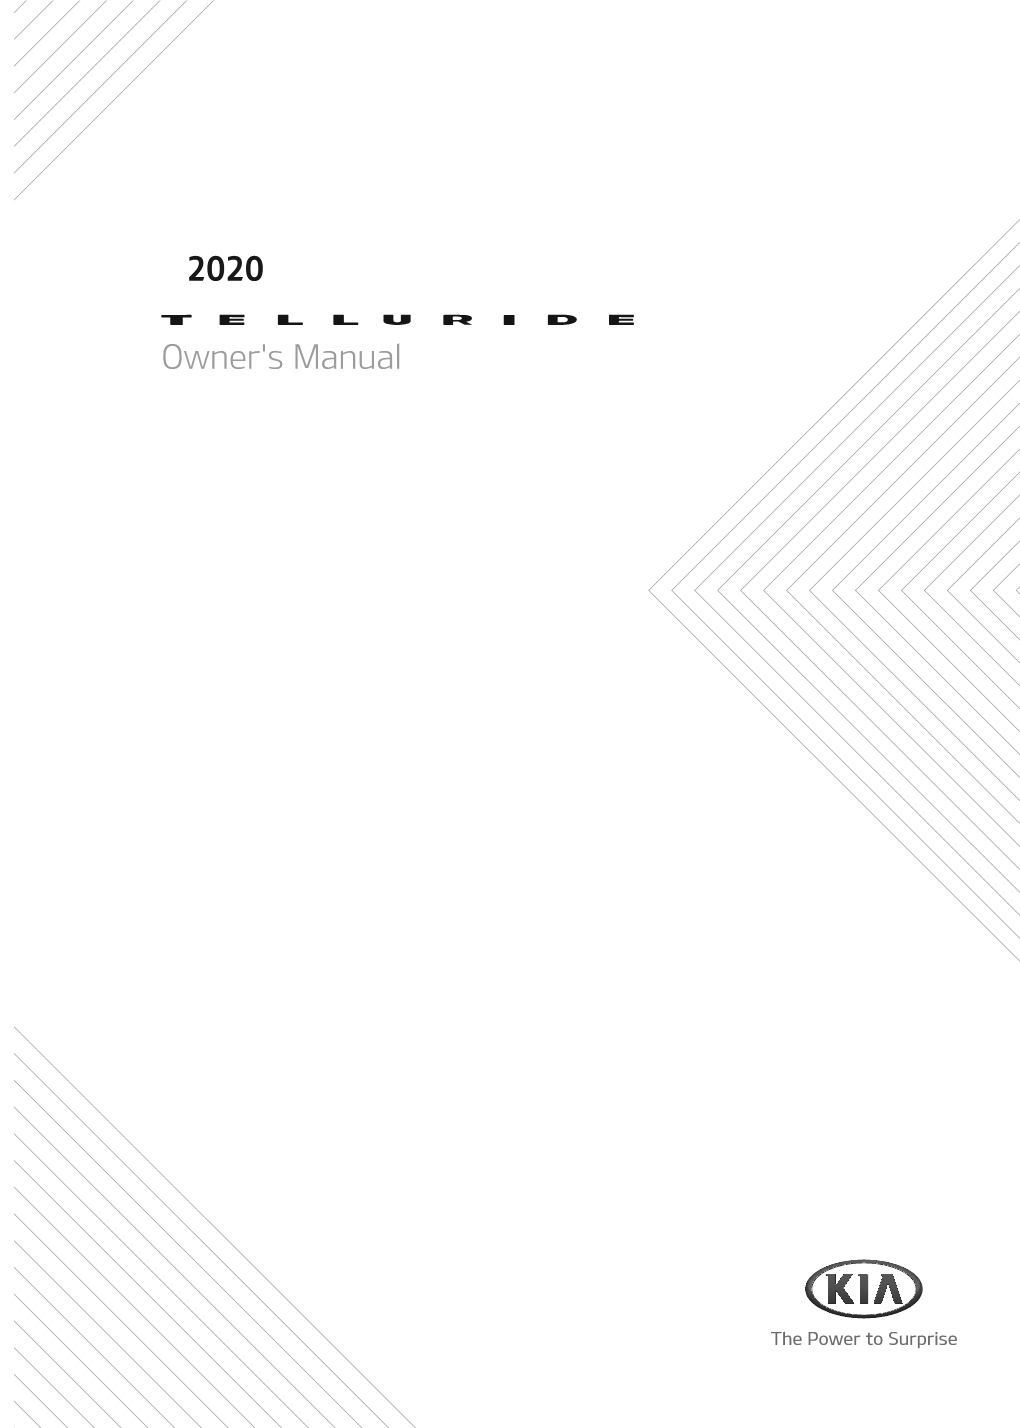 Owner's Manual 2020